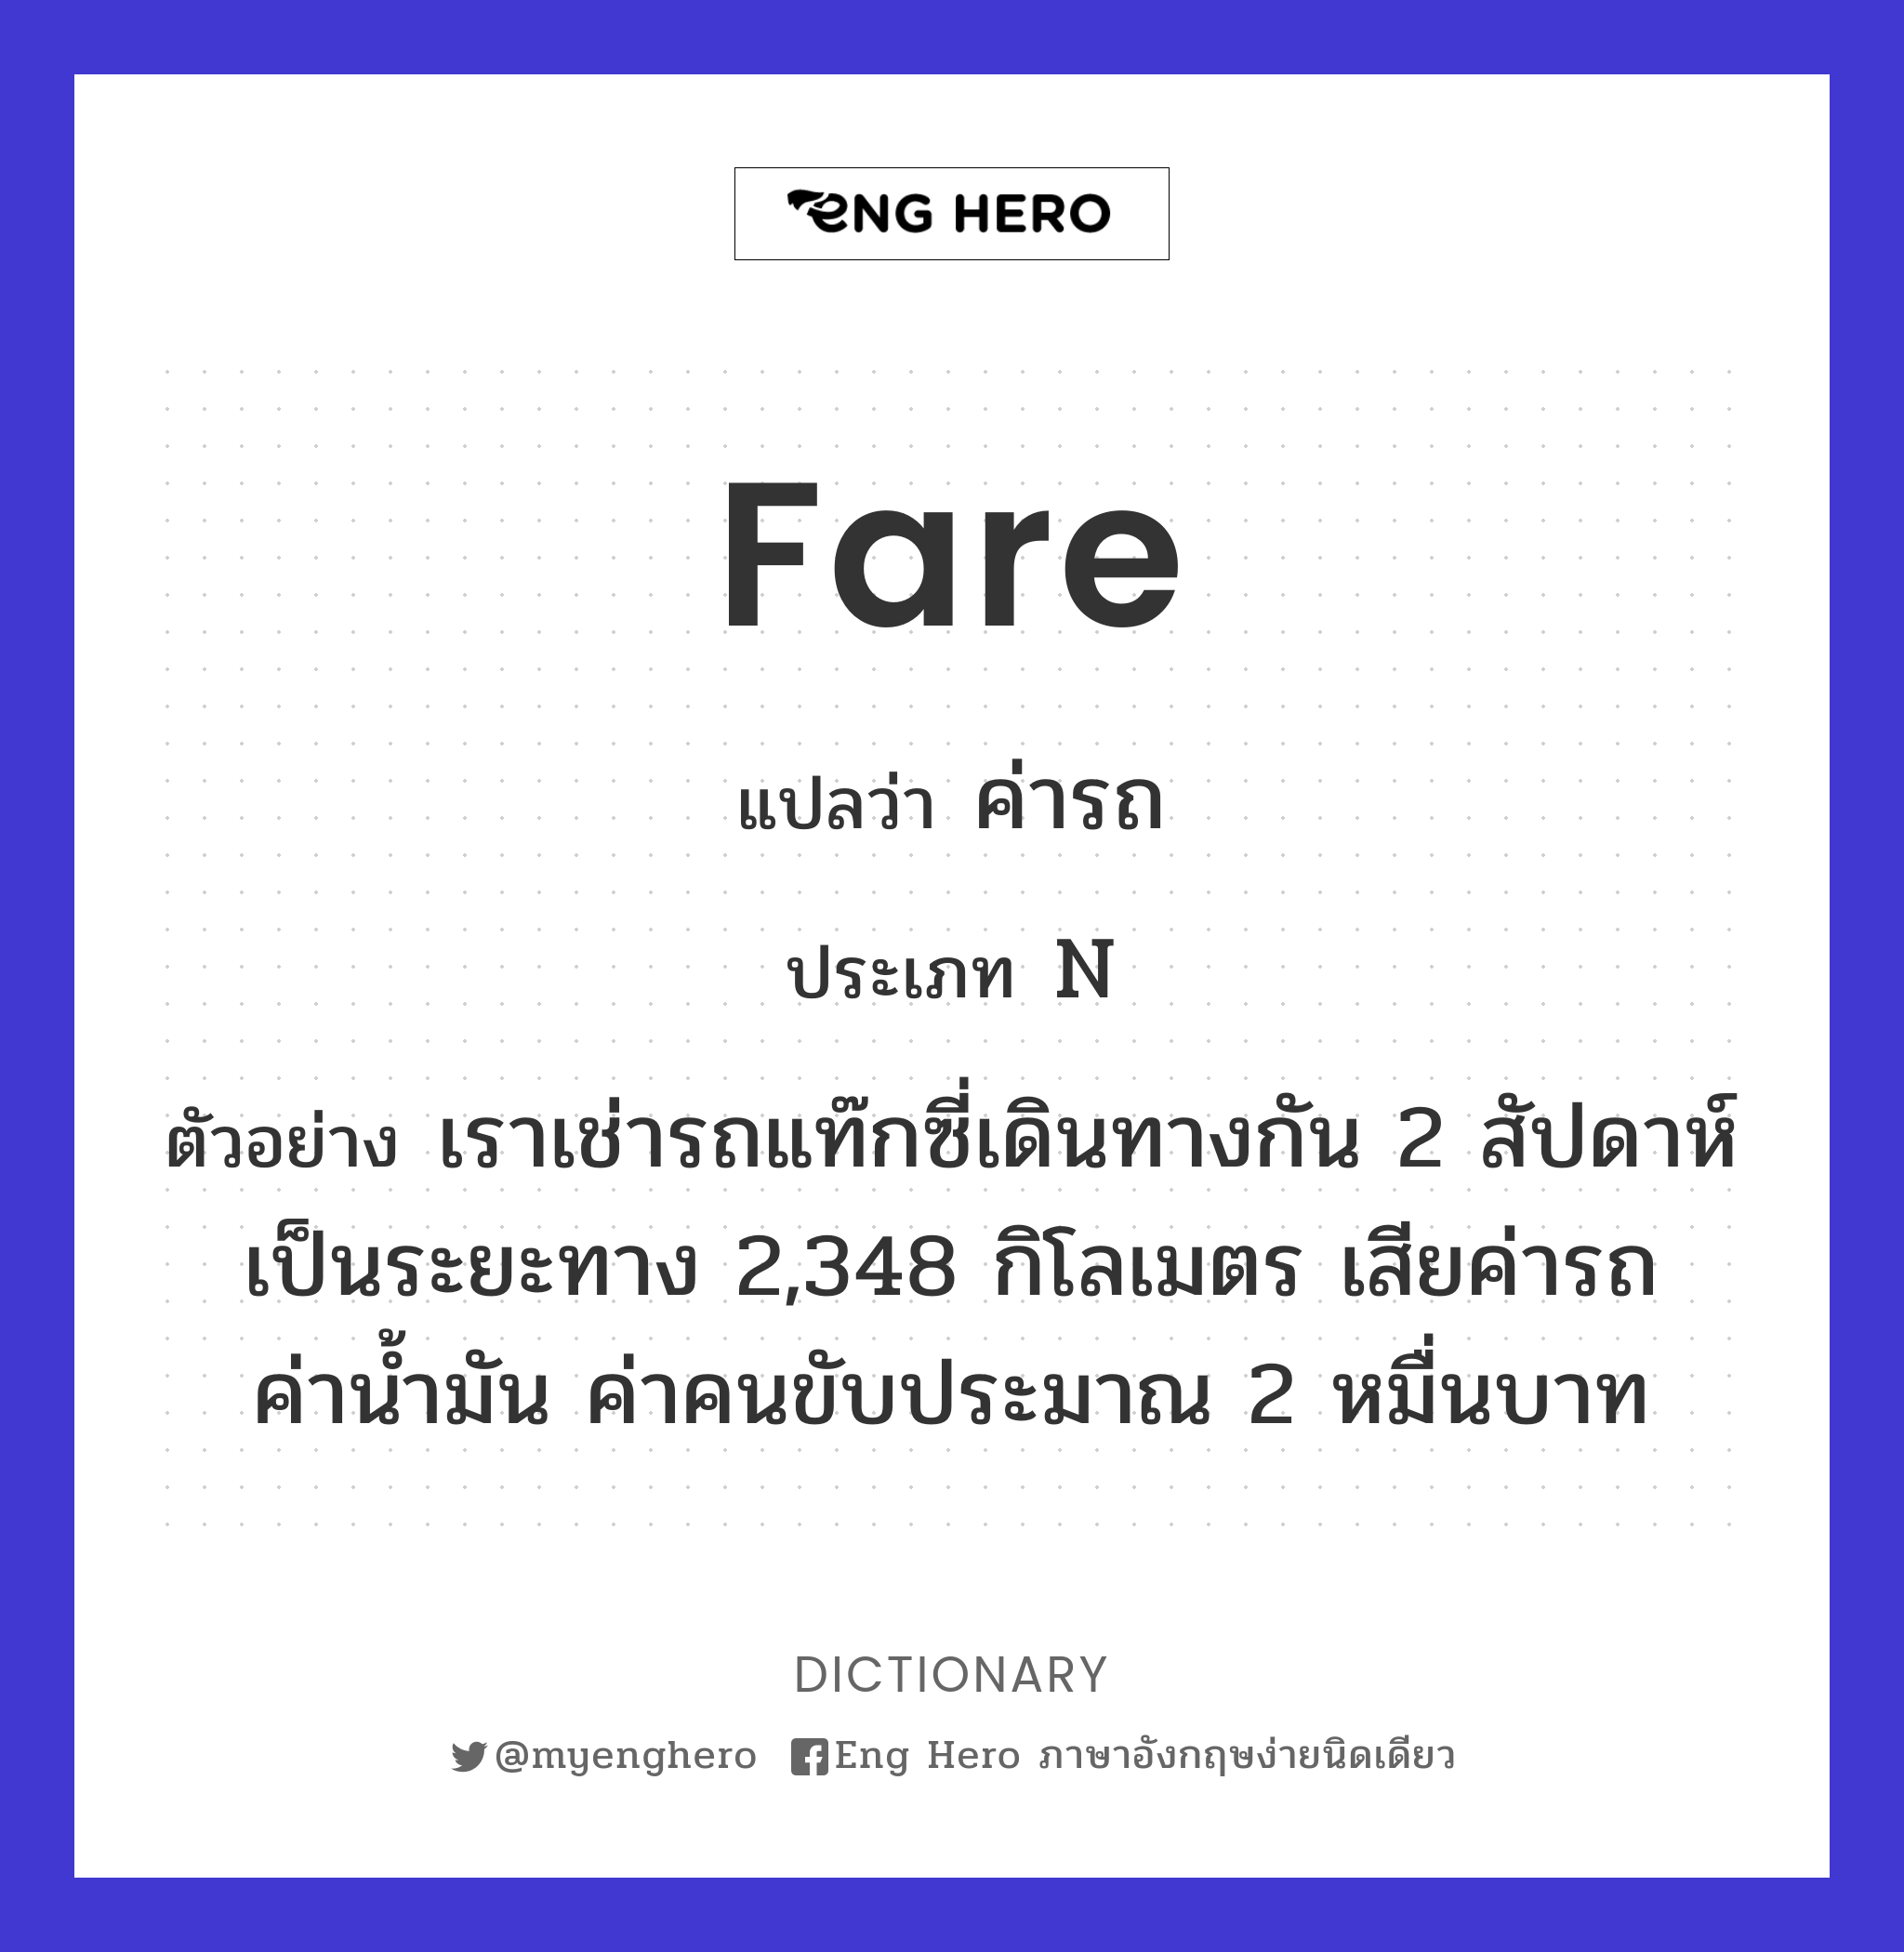 Fare แปลว่า ค่าโดยสาร, ค่าพาหนะ, ค่าเดินทาง | Eng Hero เรียนภาษาอังกฤษ  ออนไลน์ ฟรี